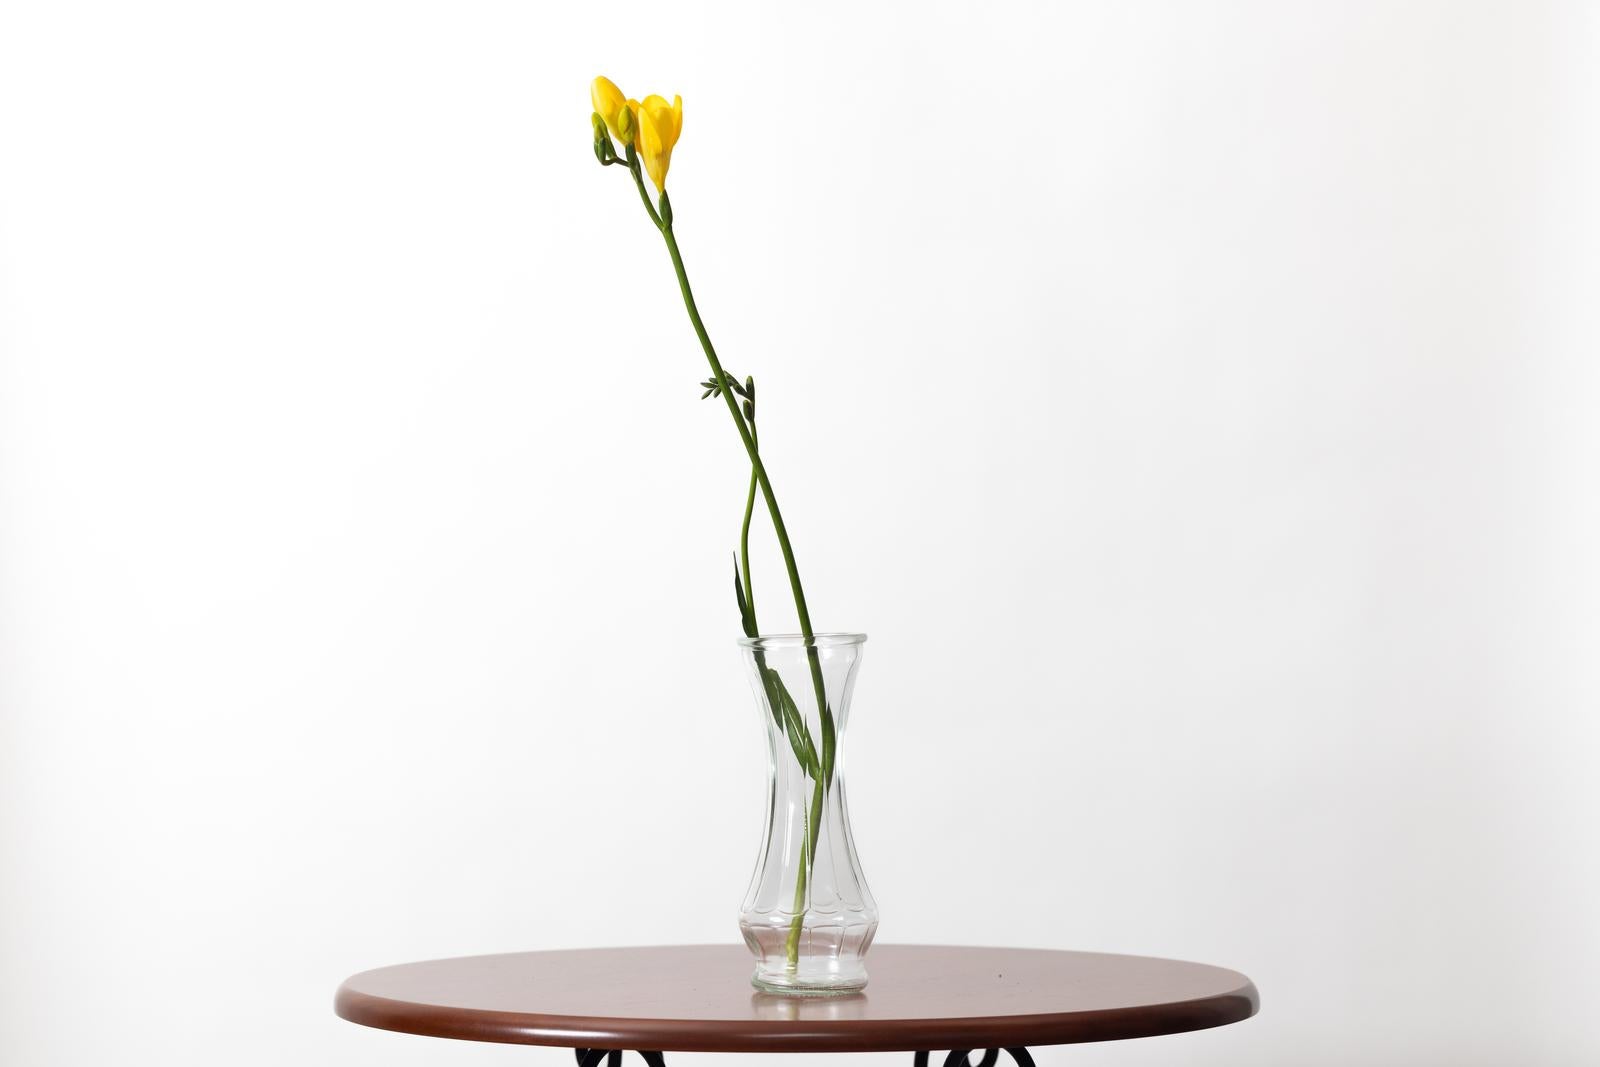 「テーブルの花瓶と黄色い蕾」の写真